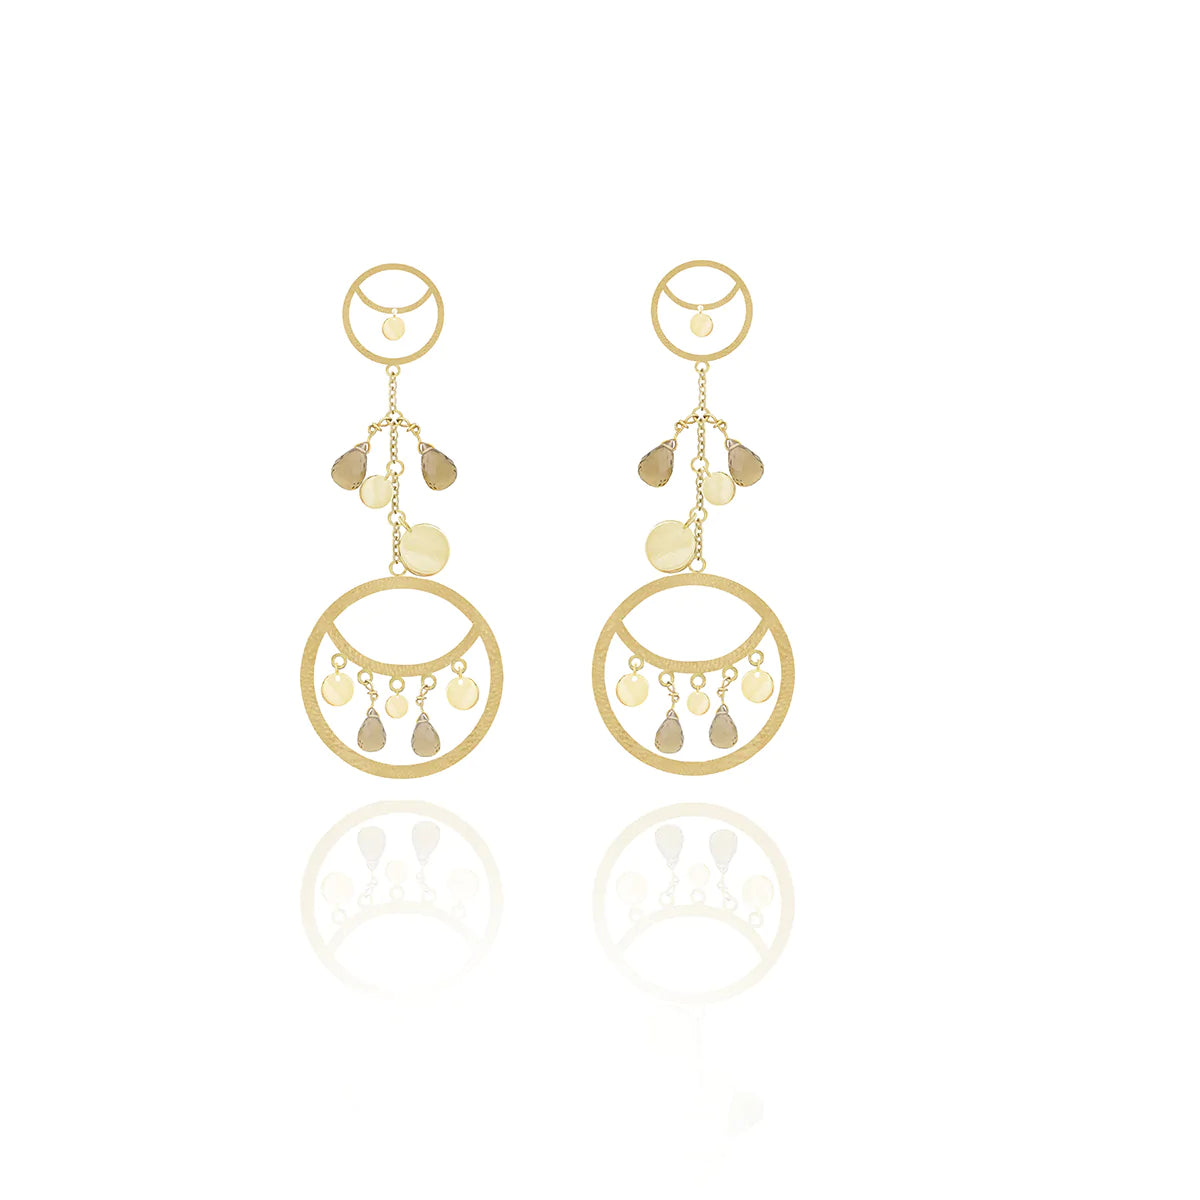 Cluster Earrings in 18k Yellow Gold